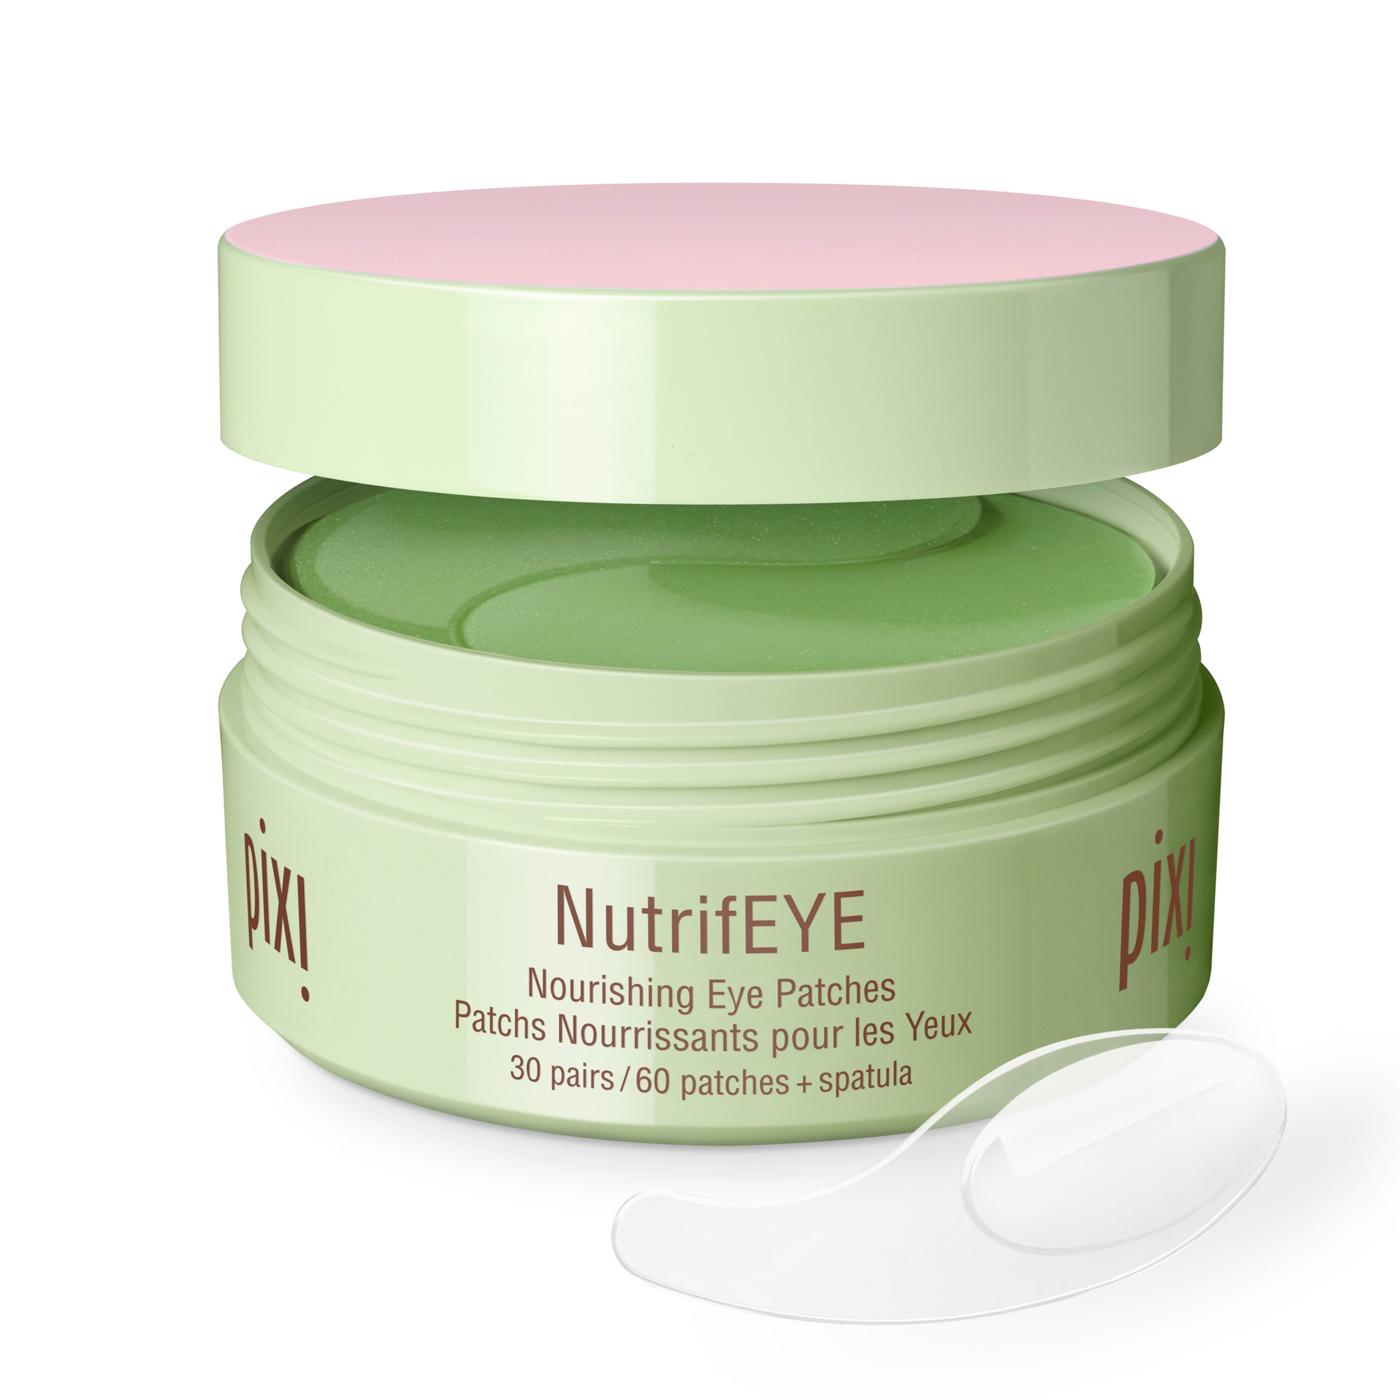 Pixi NutrifEye Nourishing Eye Patches - Rose & Chamomile; image 3 of 3